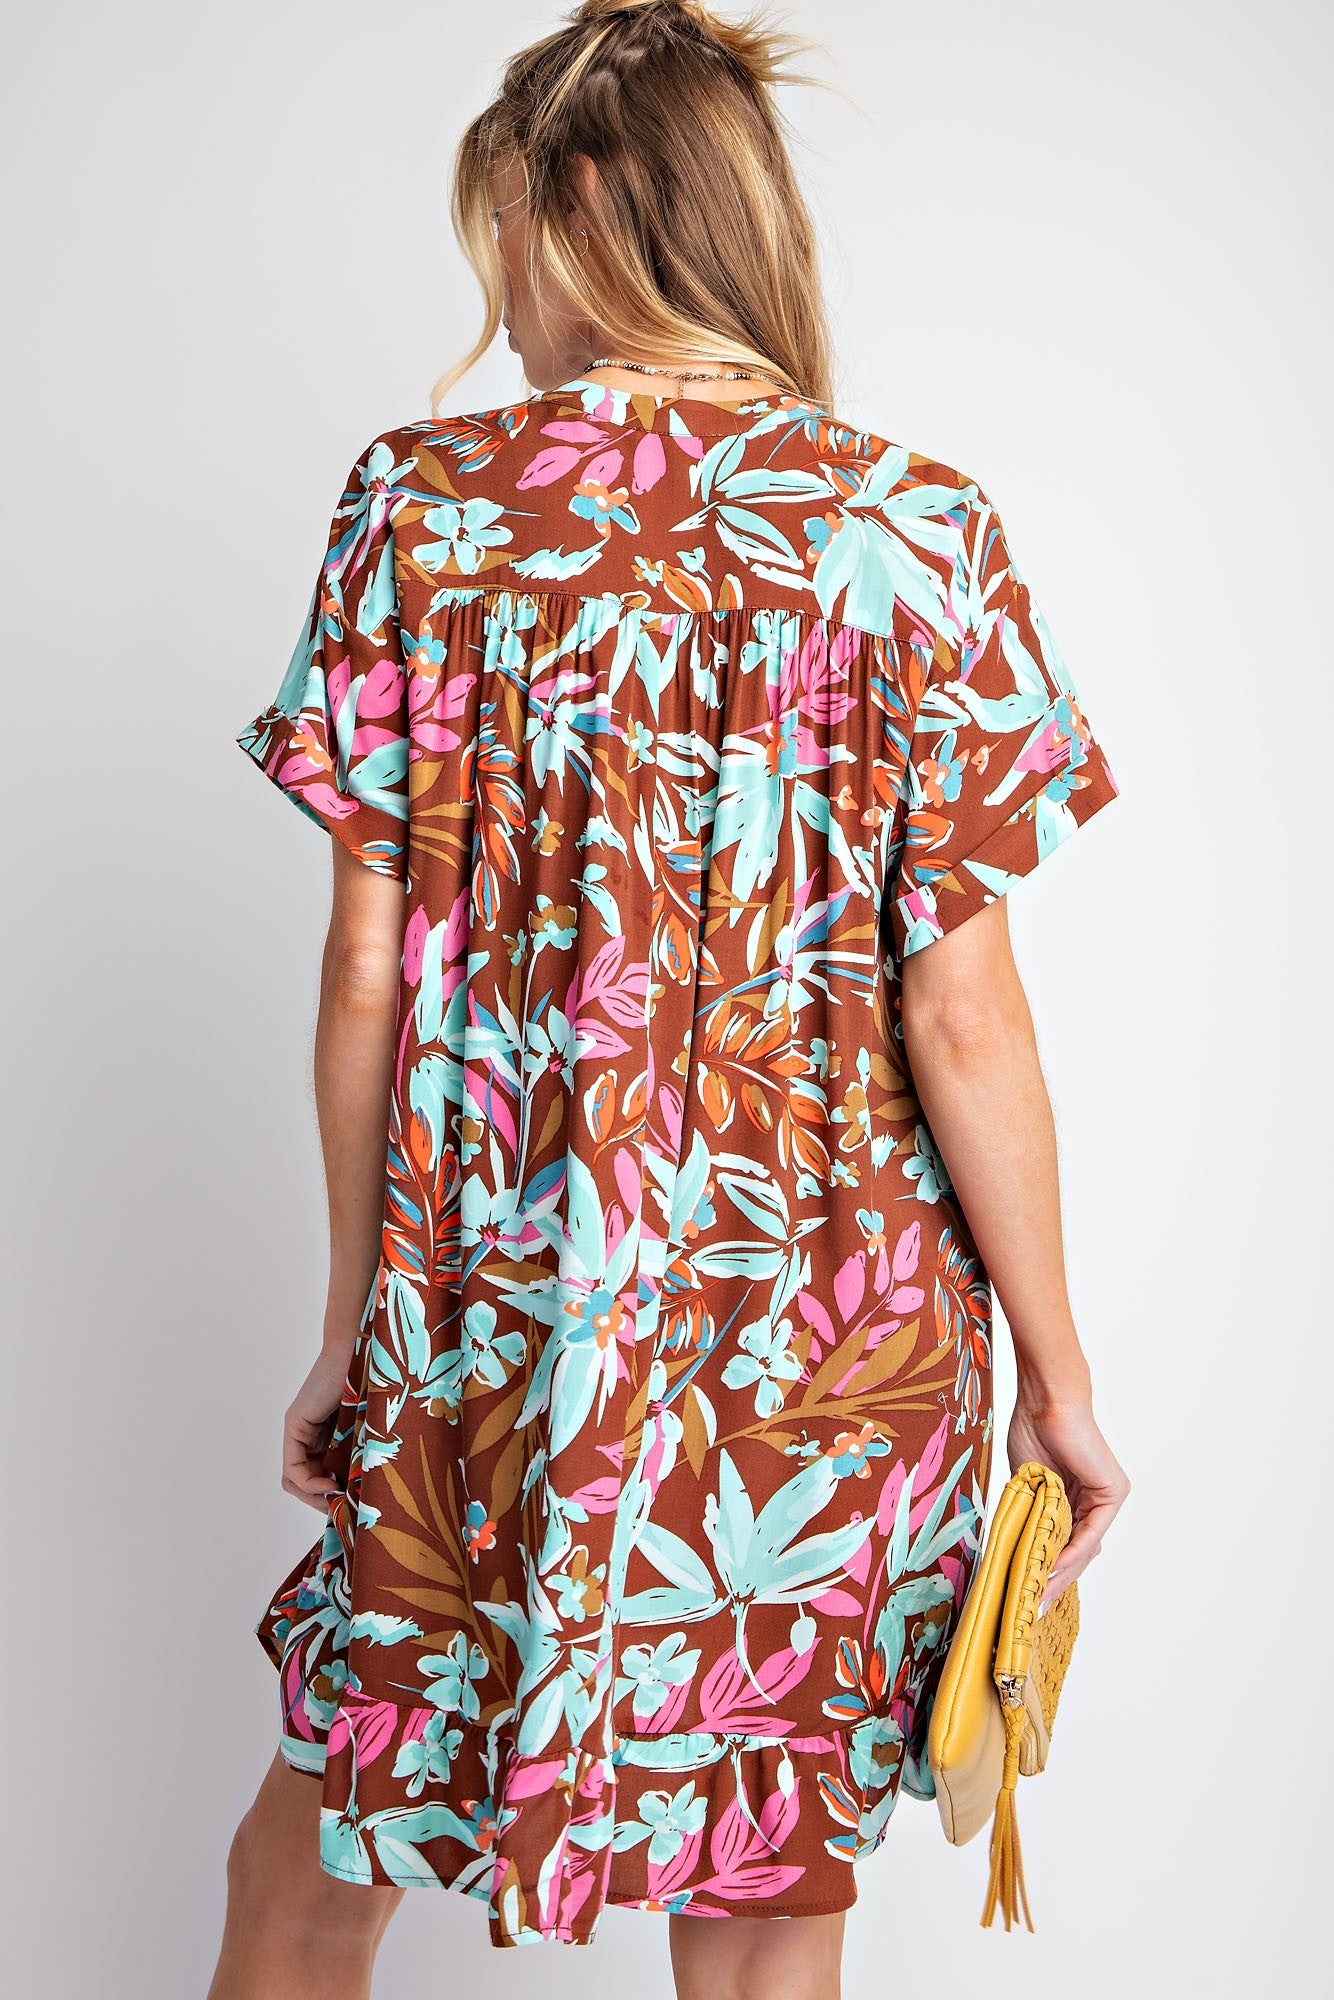 Easel Printed Rayon Challis Woven Dress